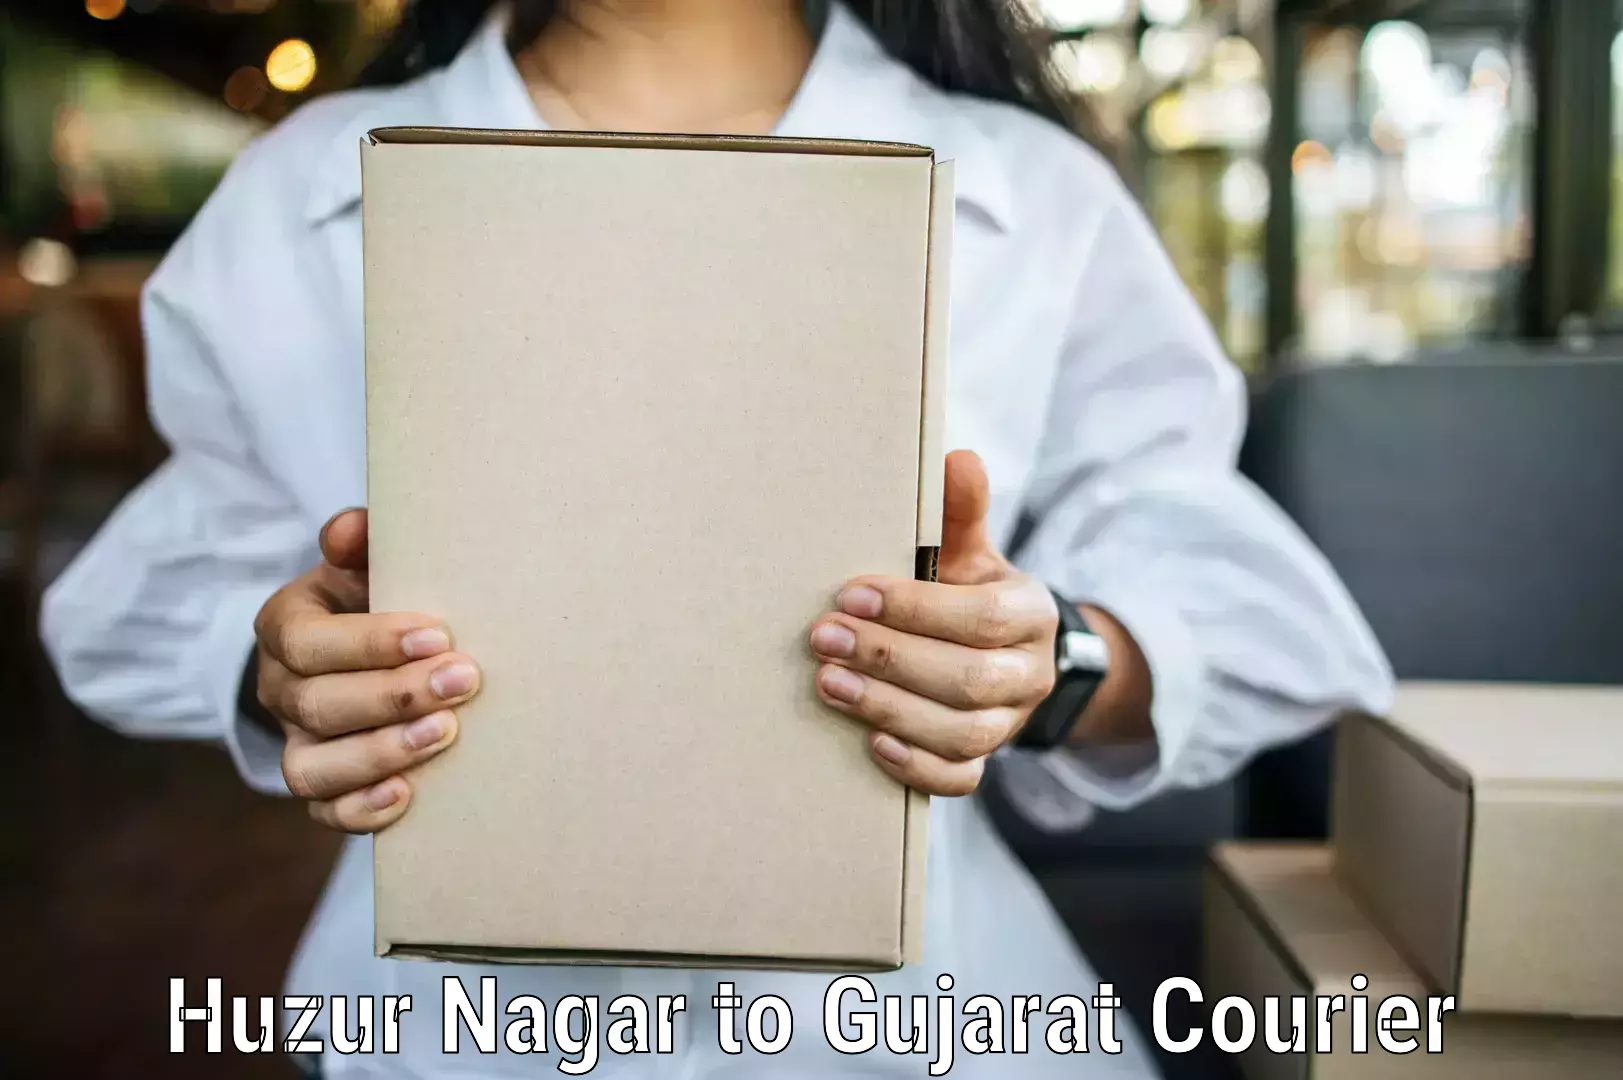 Dynamic courier services Huzur Nagar to Girgadhada